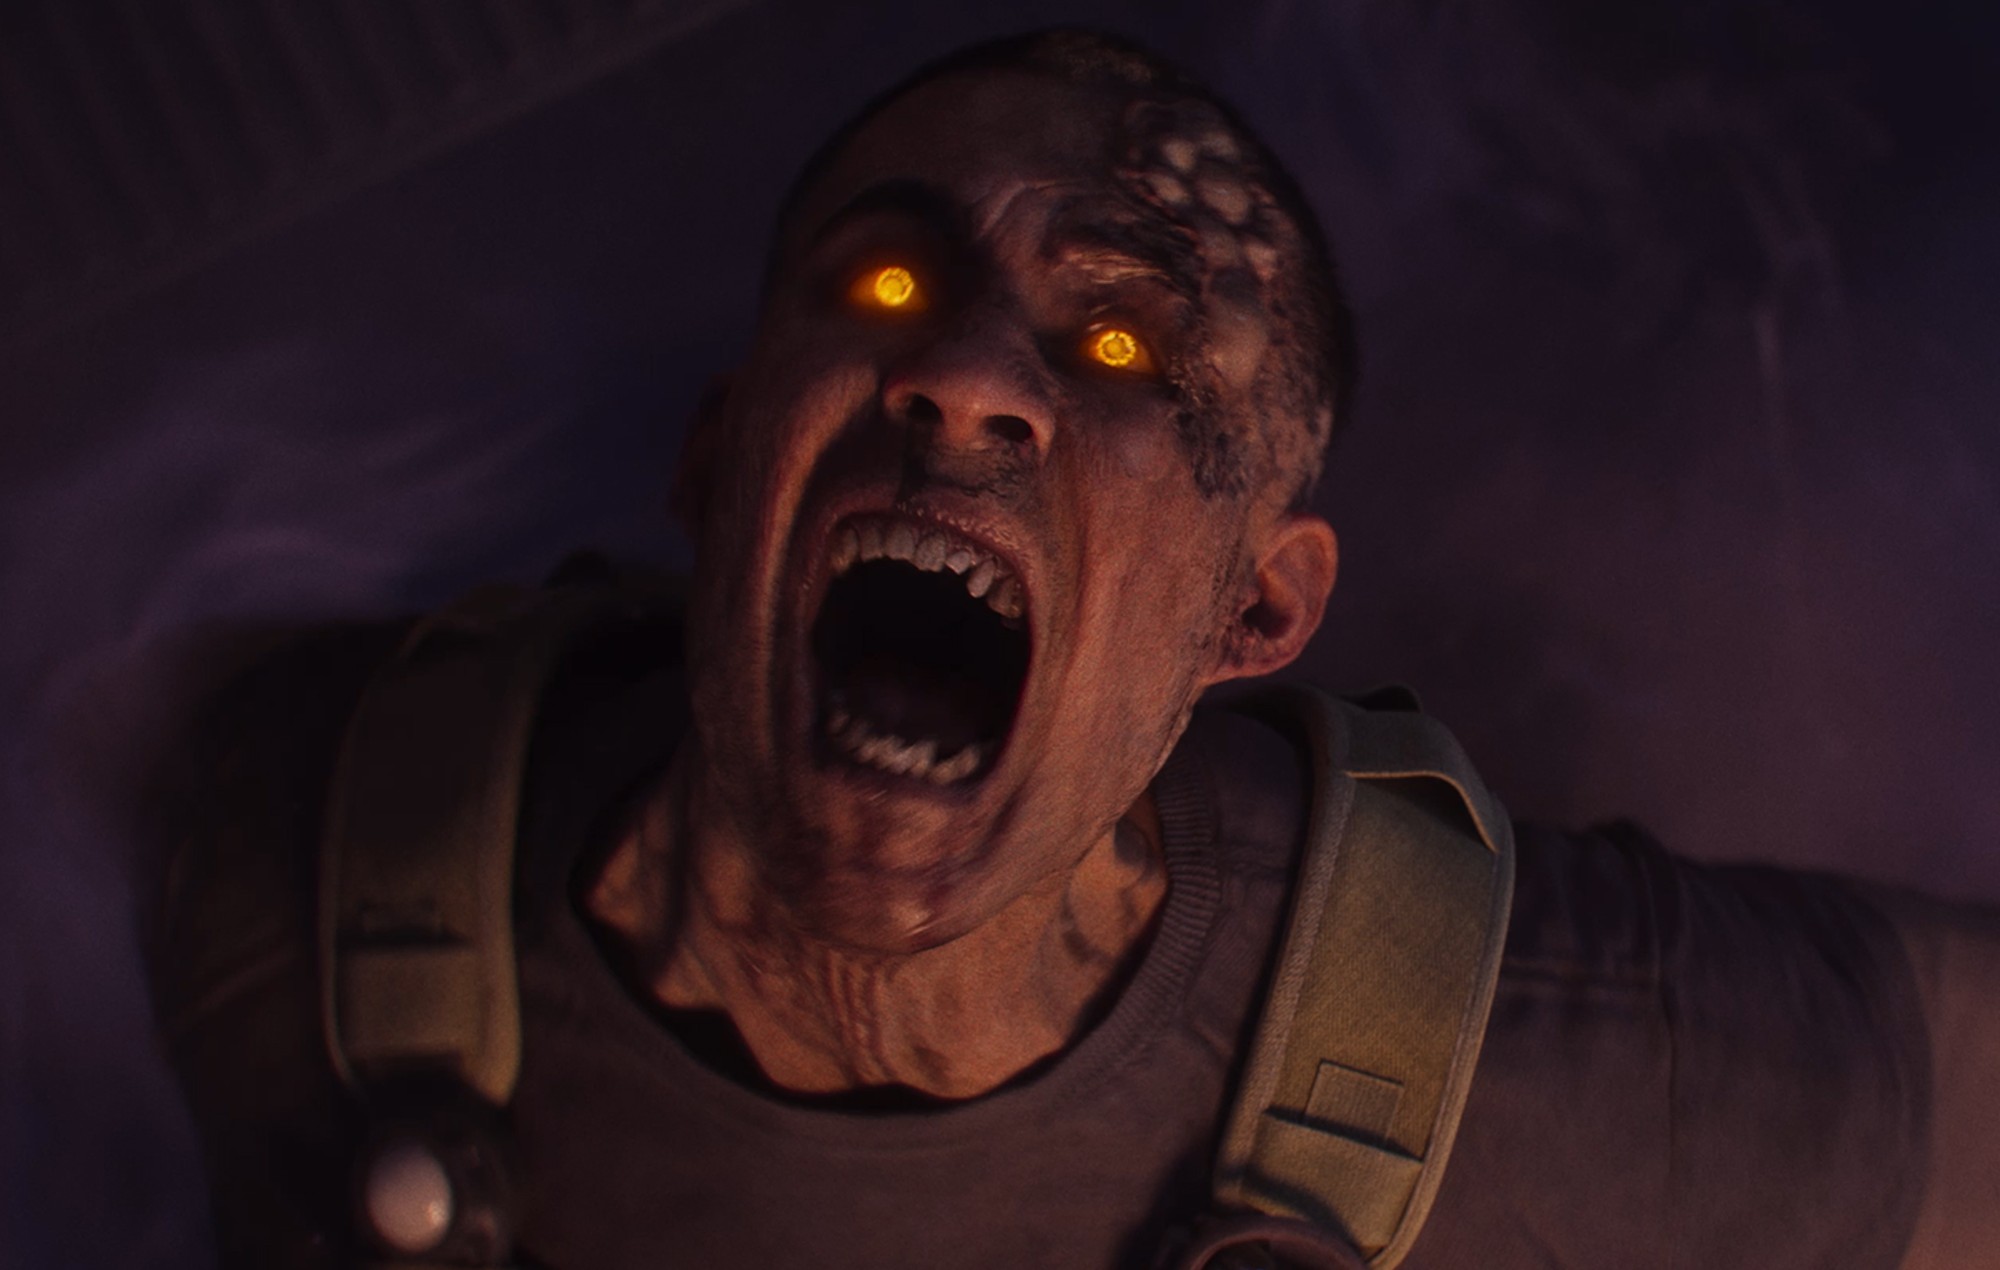 La bande-annonce de "Call Of Duty: Modern Warfare 3" révèle le mode zombie en monde ouvert